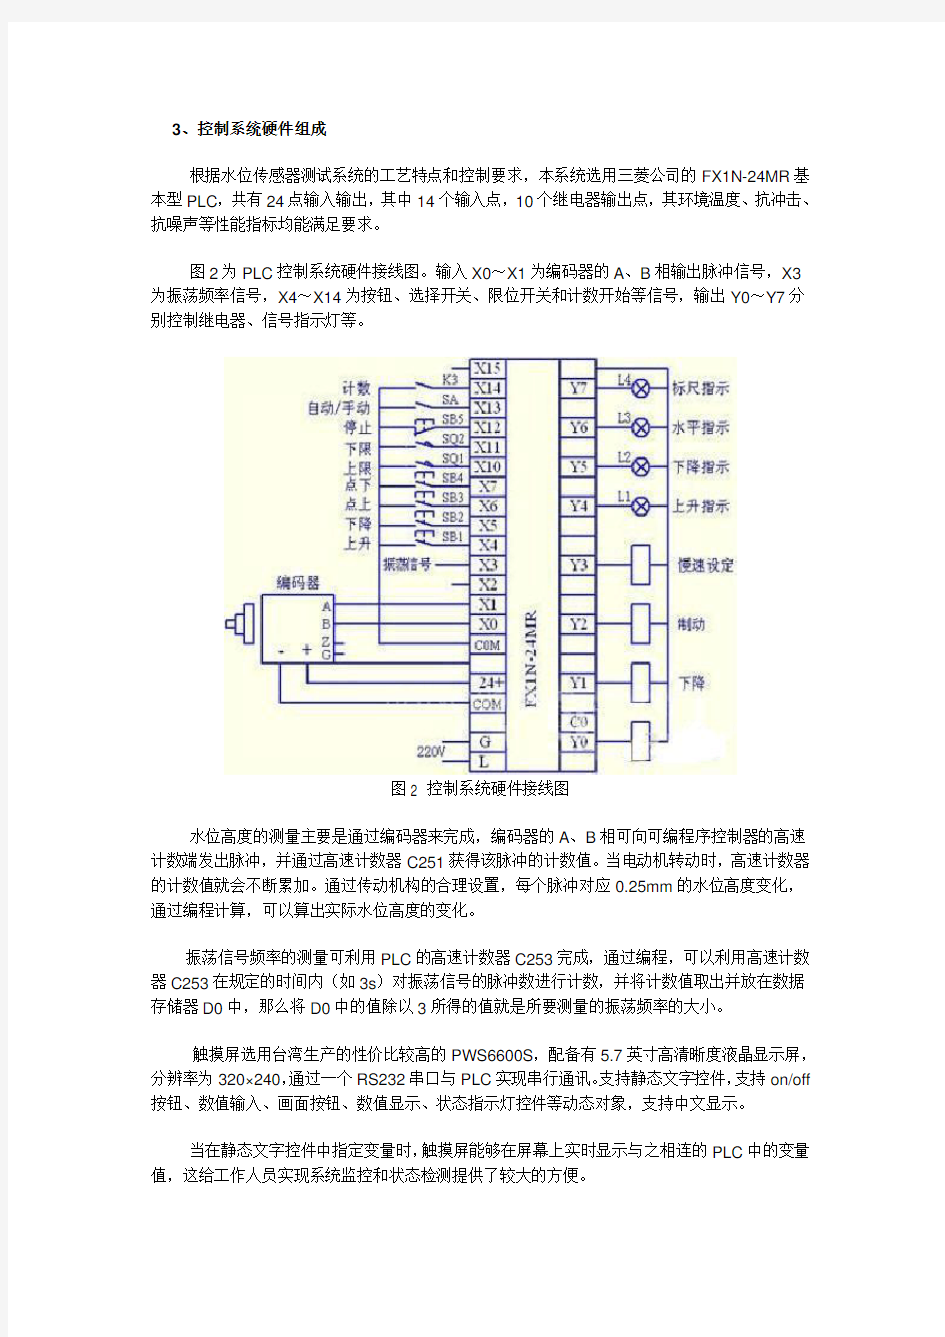 PLC程序控制流程图范例